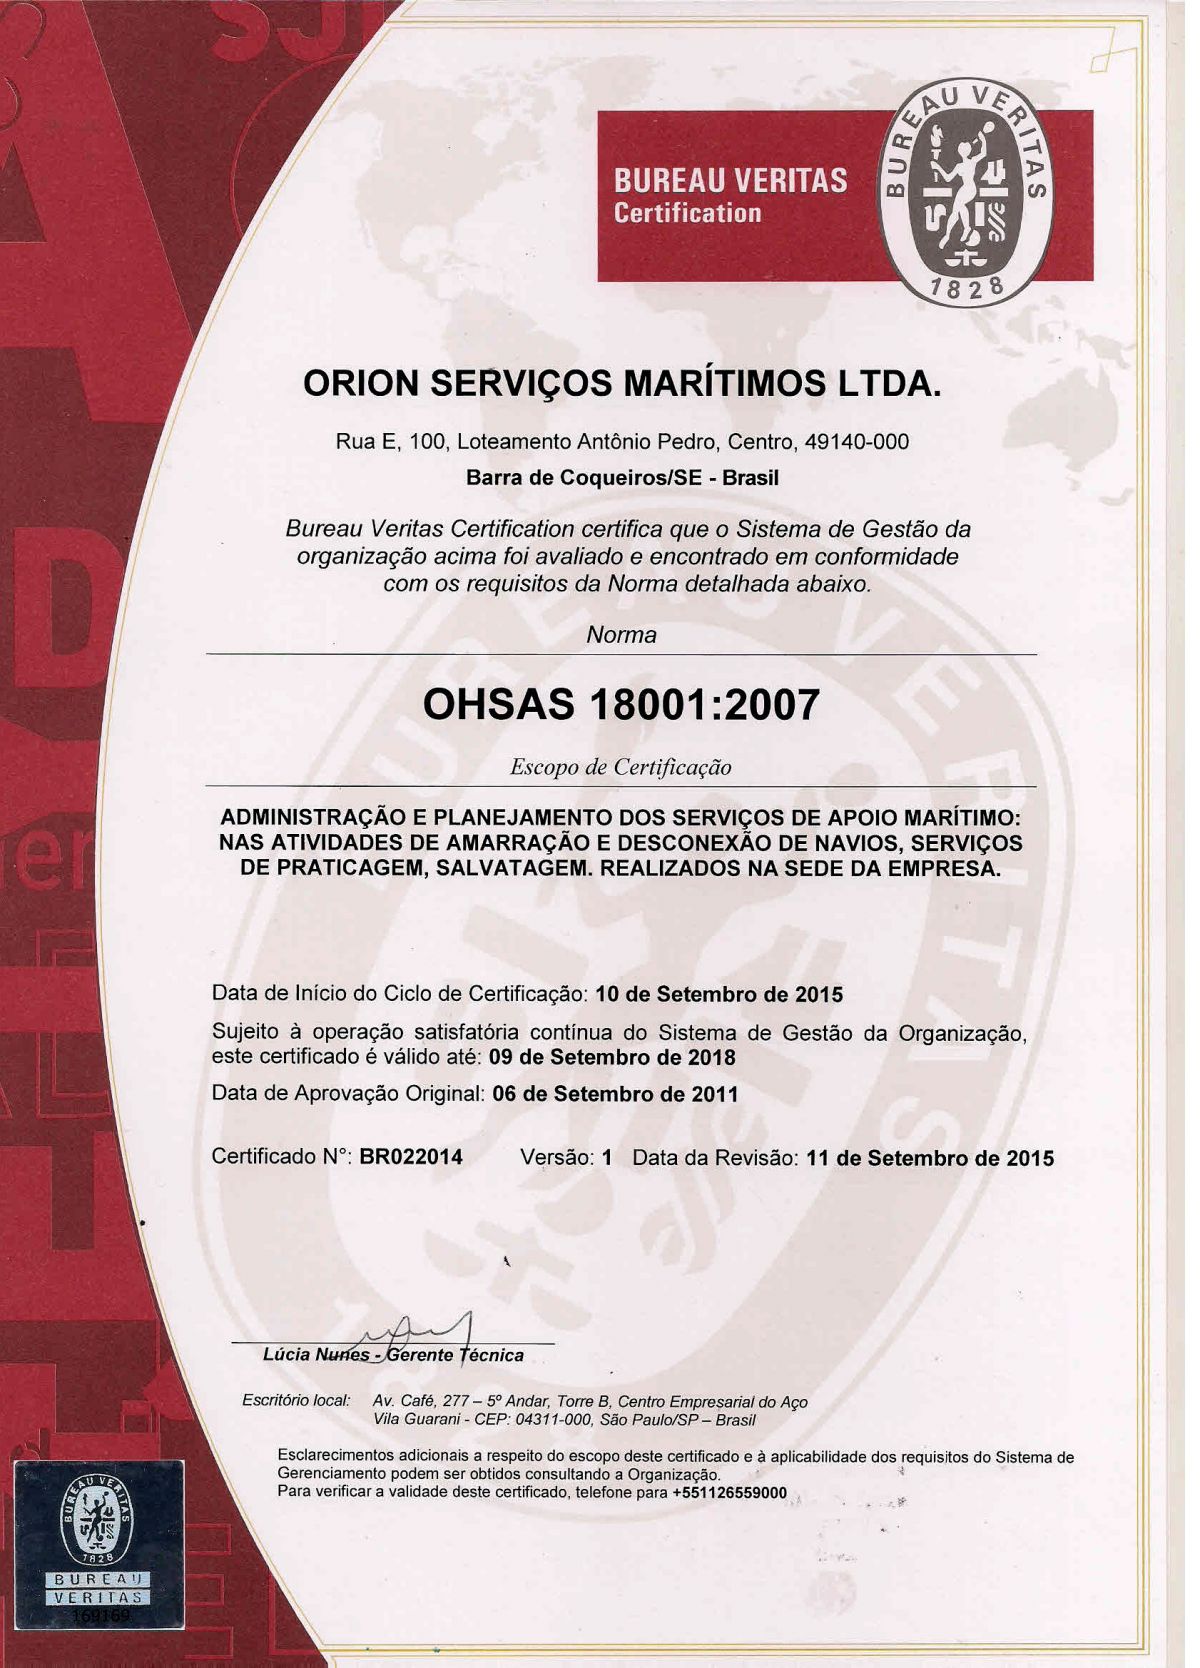 OHSAS 18001 - 2007